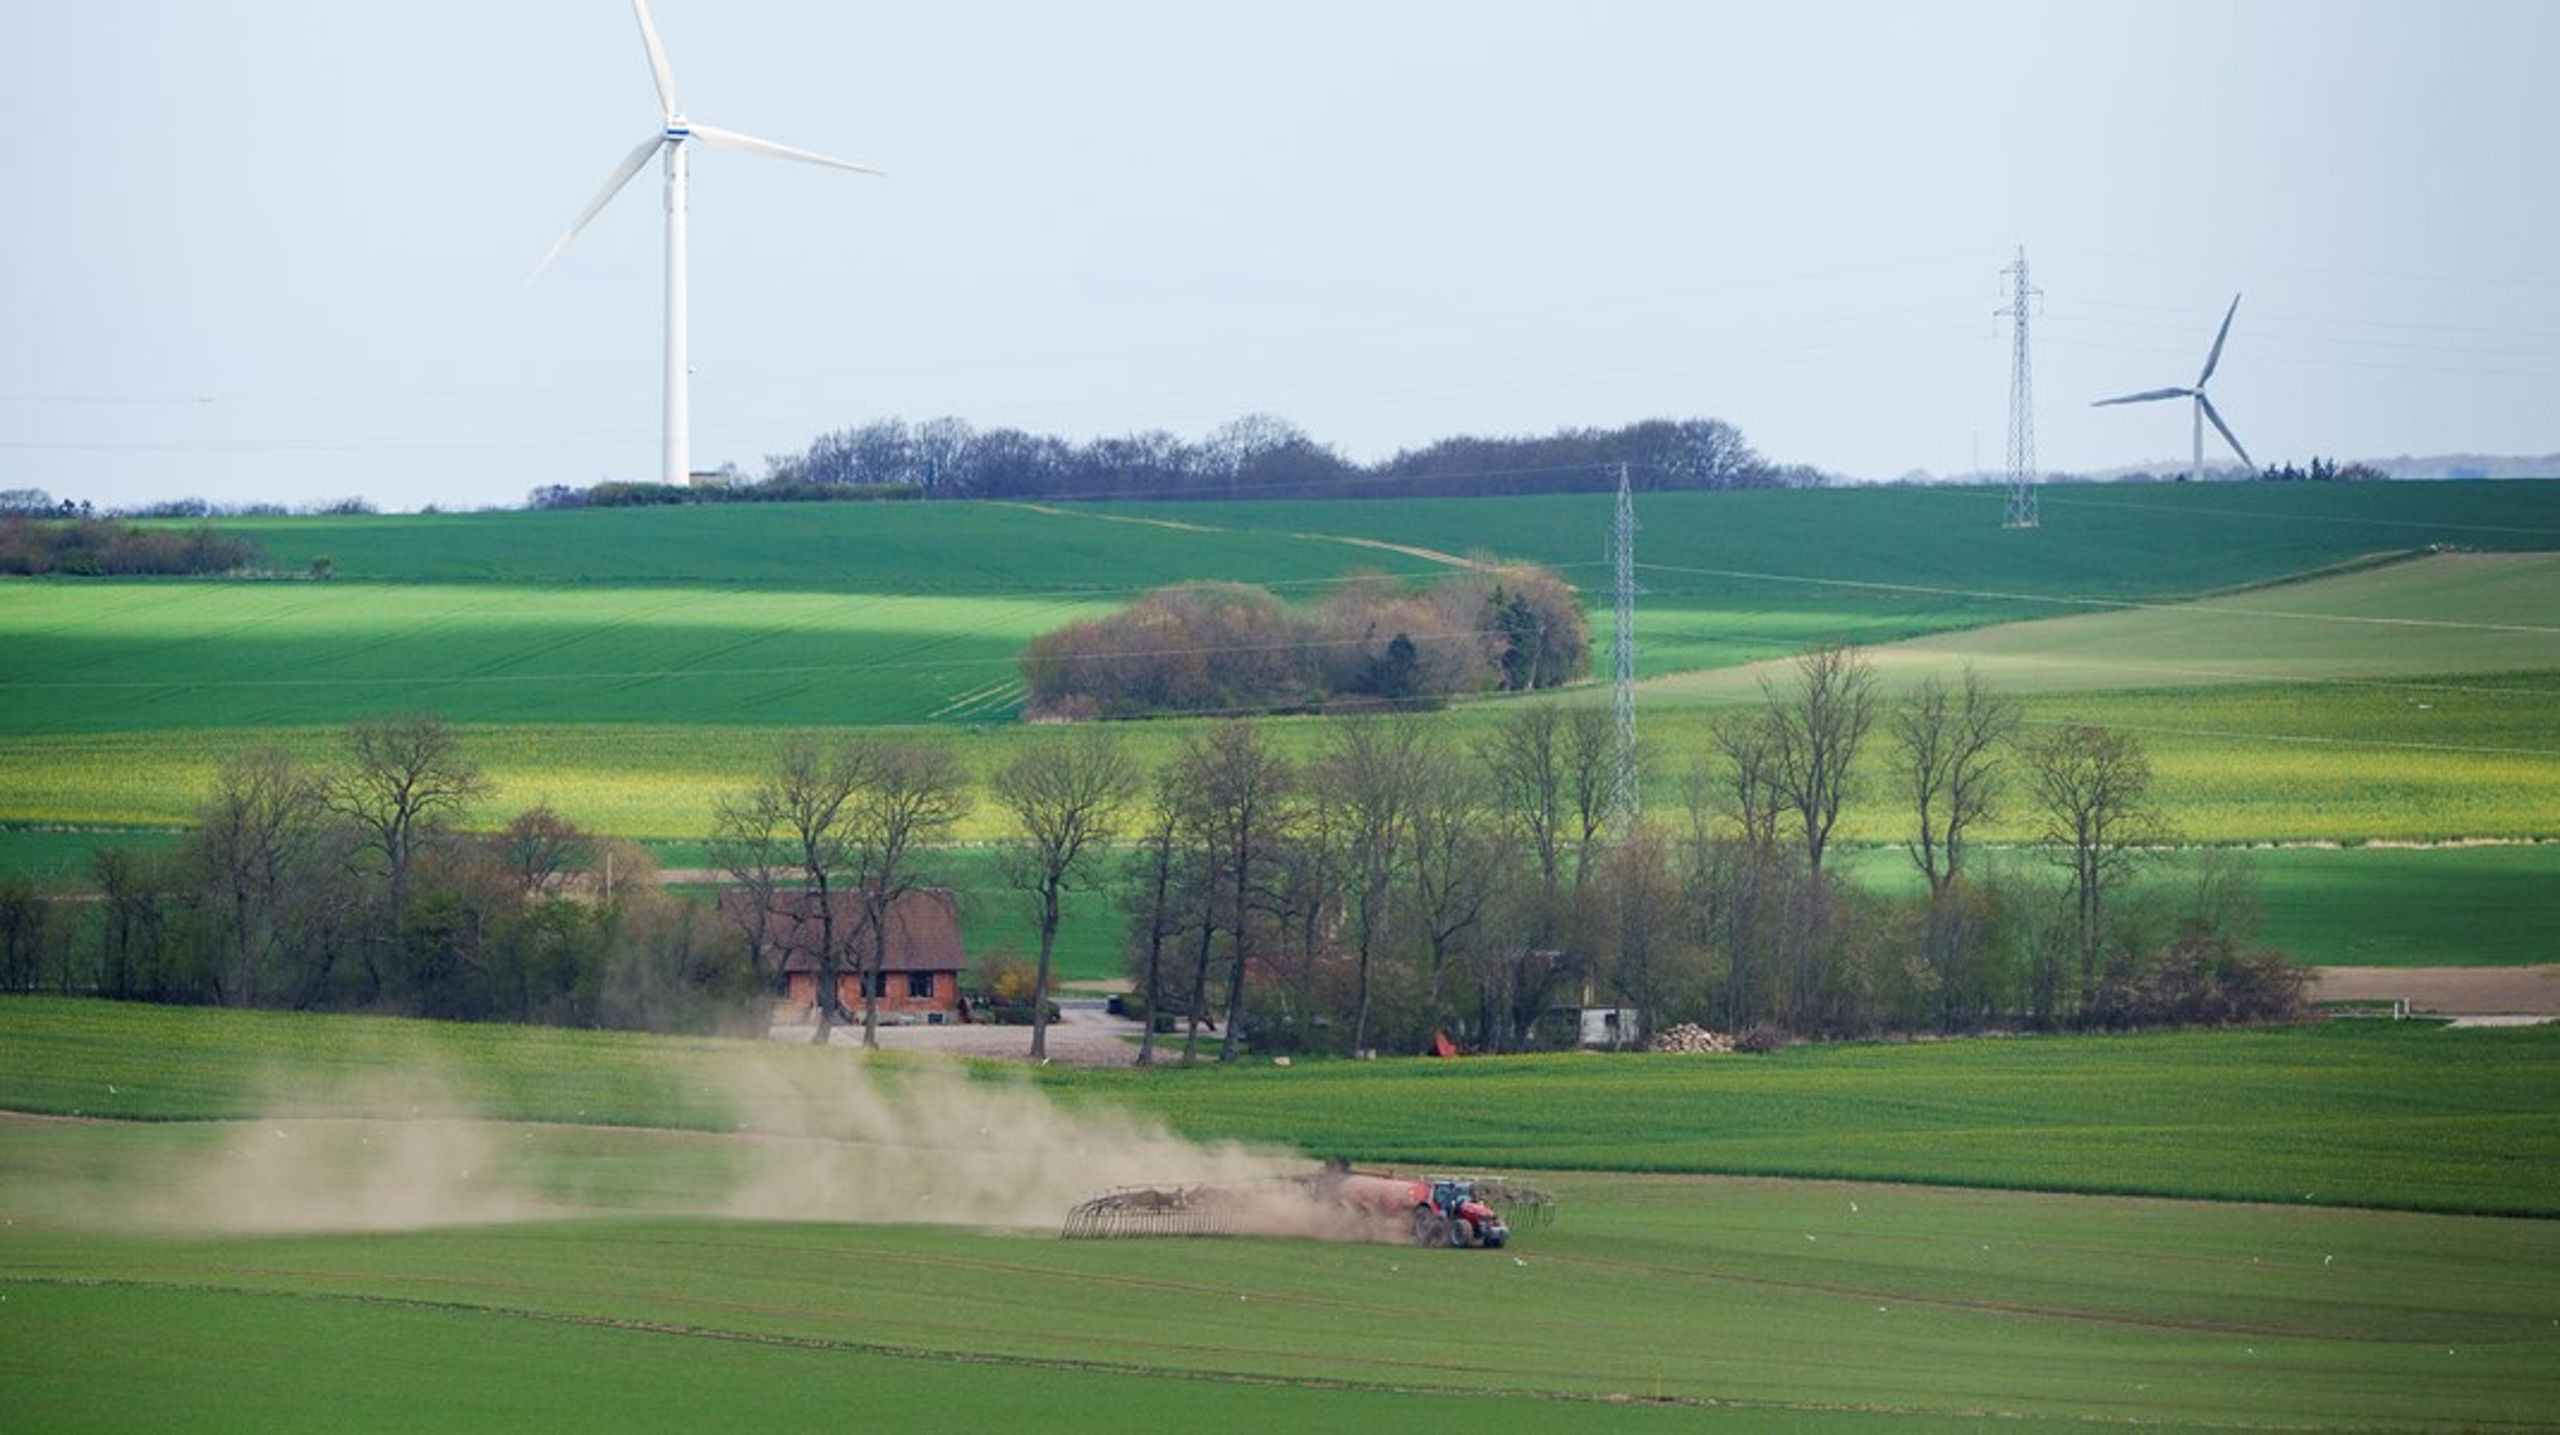 Dansk landbrug som erhverv står for den største nationale klimabelastning herhjemme. Det bør vi gøre noget ved, skriver Tobias Mark Sørensen.